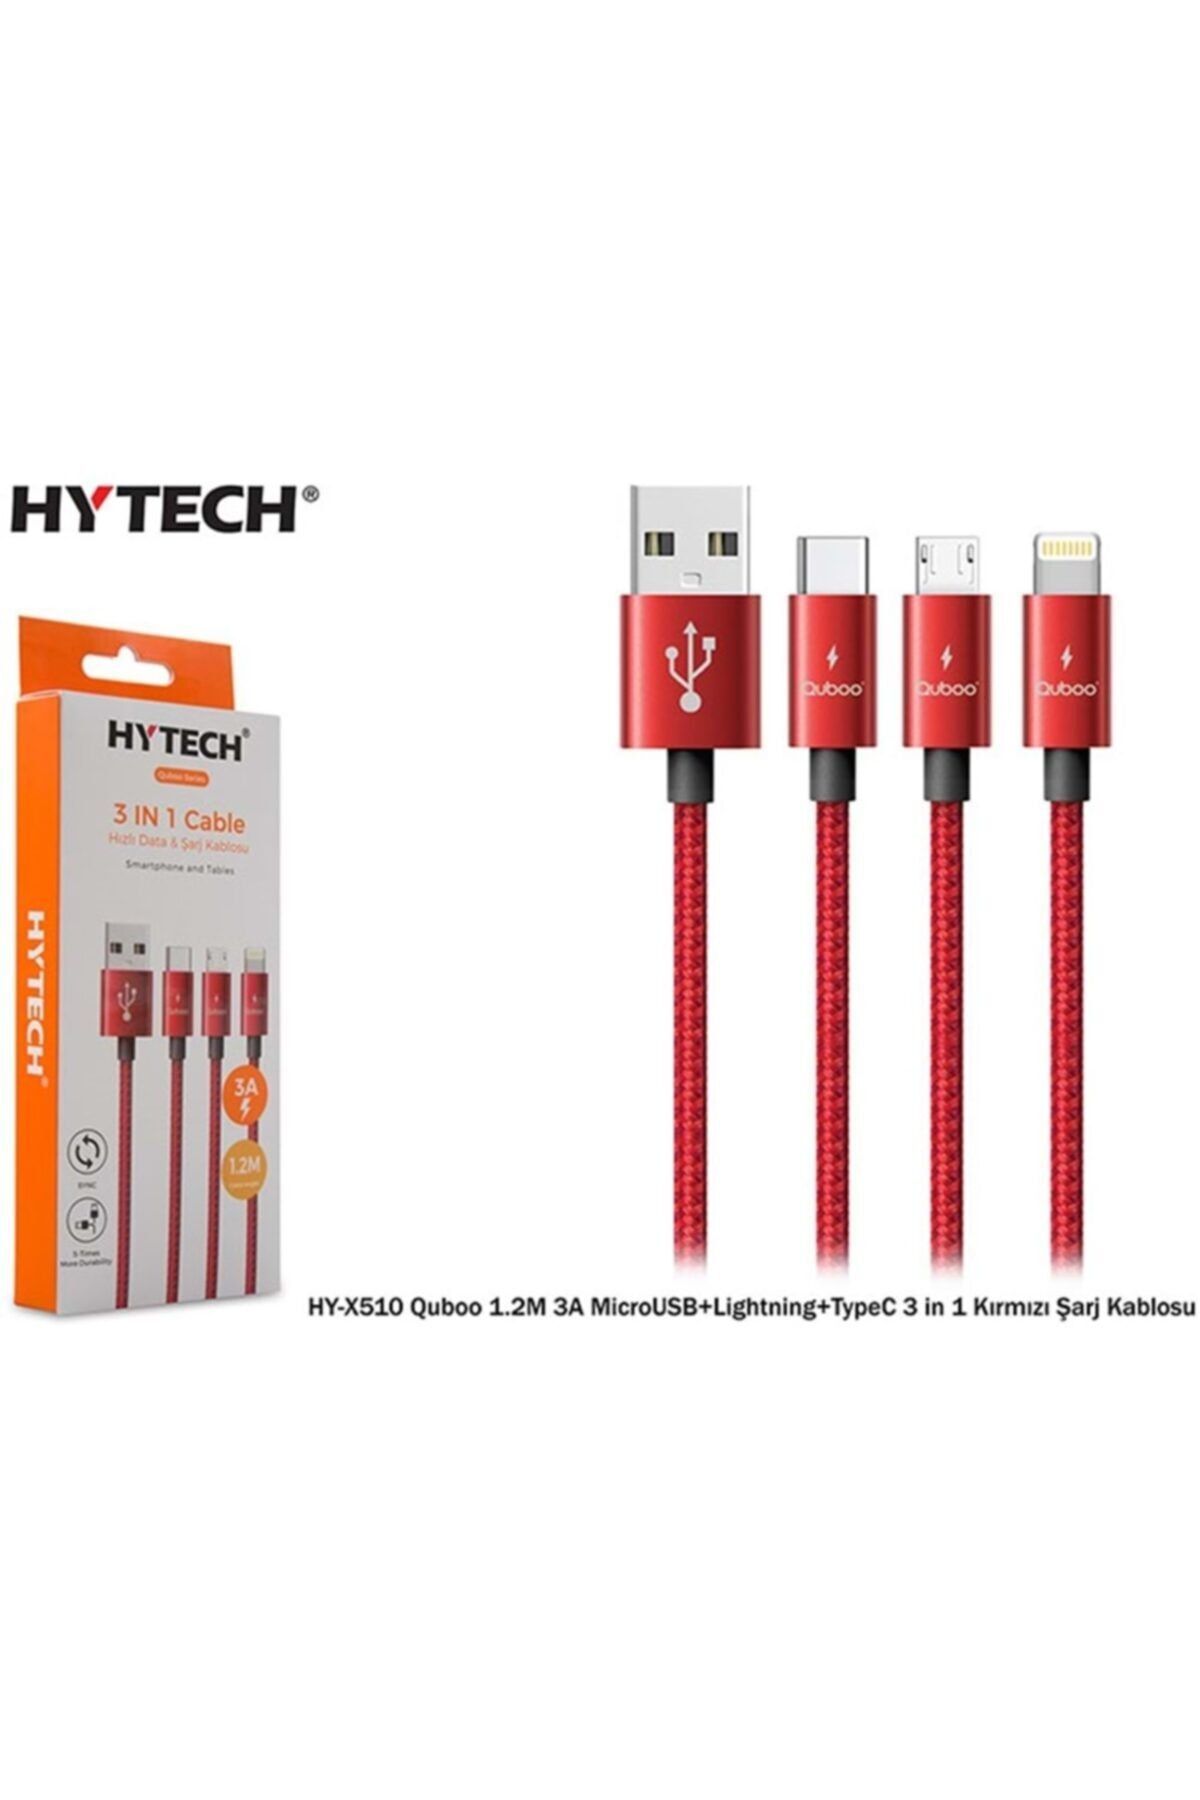 Hytech Hy-x510 Quboo 1.2m 3a Micro Usb+lightning+typec 3 In 1 Kırmızı Şarj Kablosu